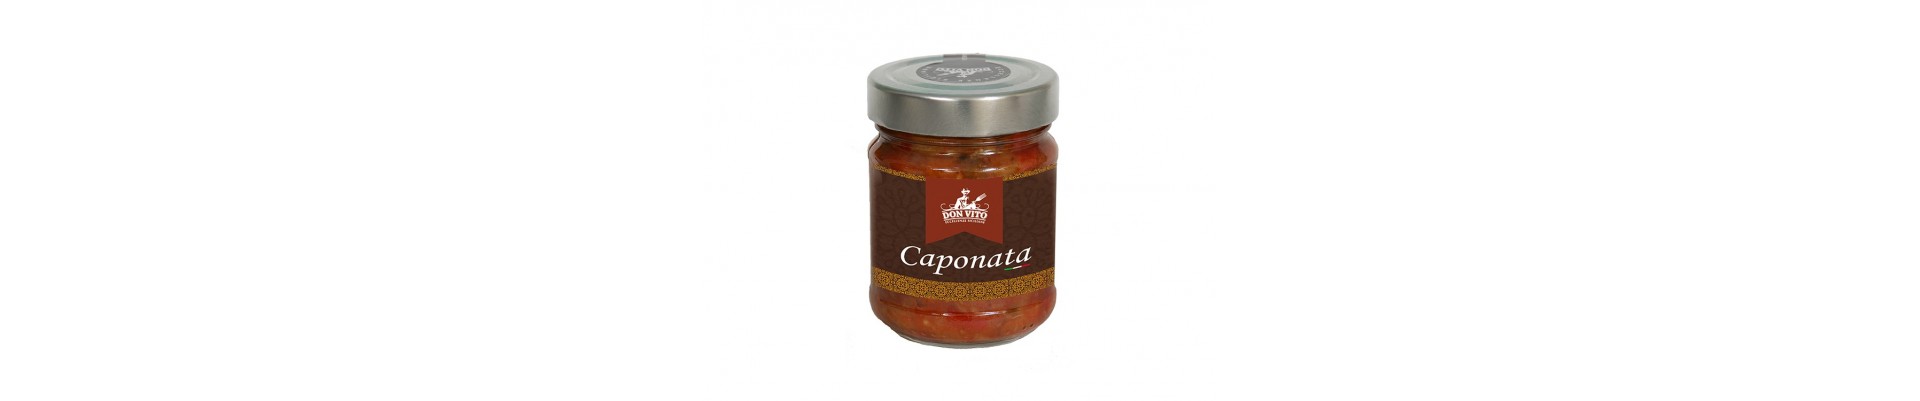 Vente en ligne de Caponata et pesto produits et conditionnés en Sicile